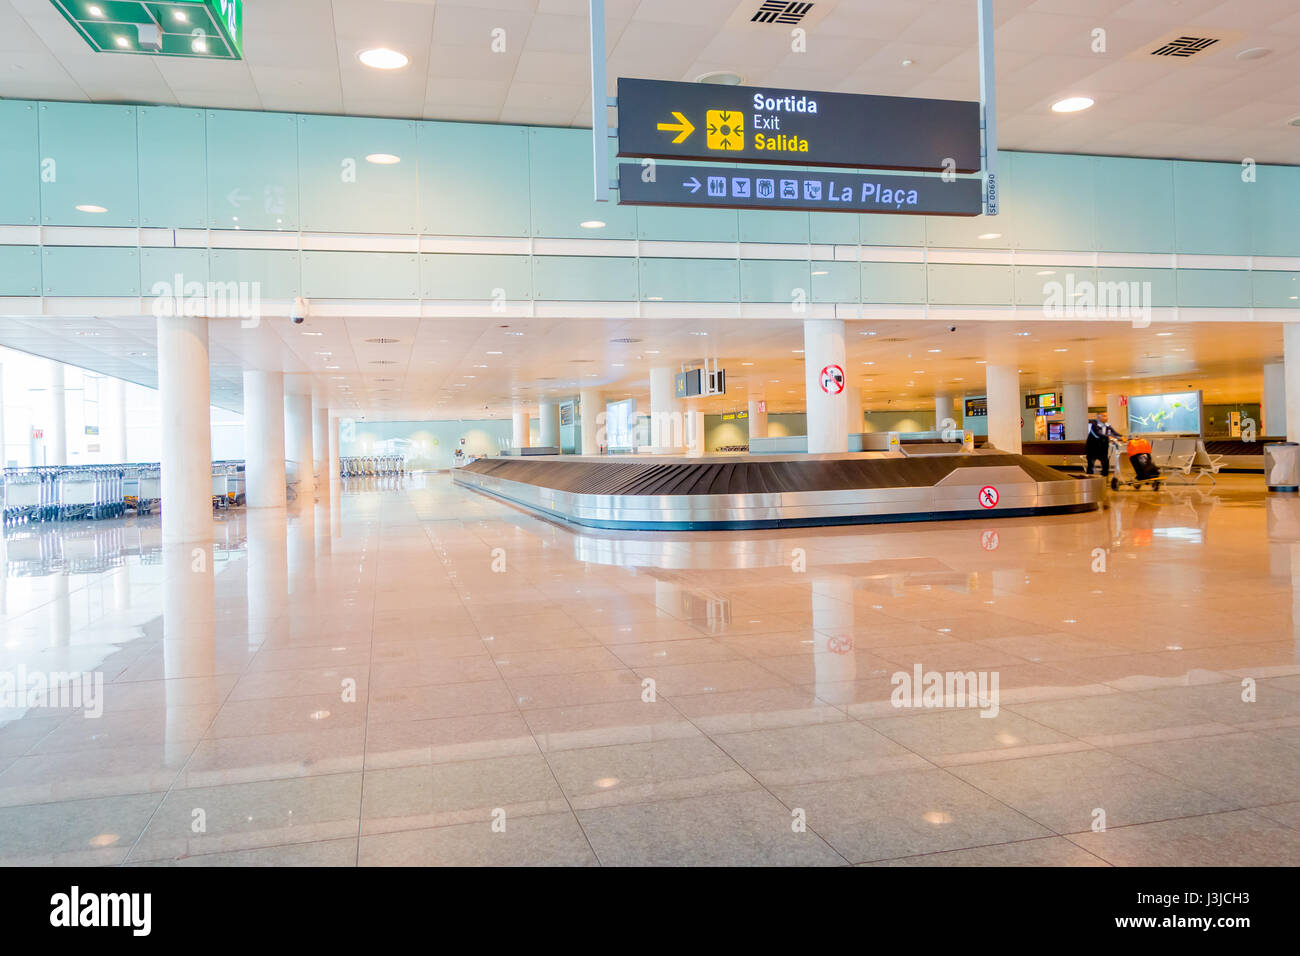 Barcelone, Espagne - 8 août, 2015 : tapis roulant pour bagages des arrivées à l'intérieur grand hall de couleur vive à l'aéroport. Banque D'Images